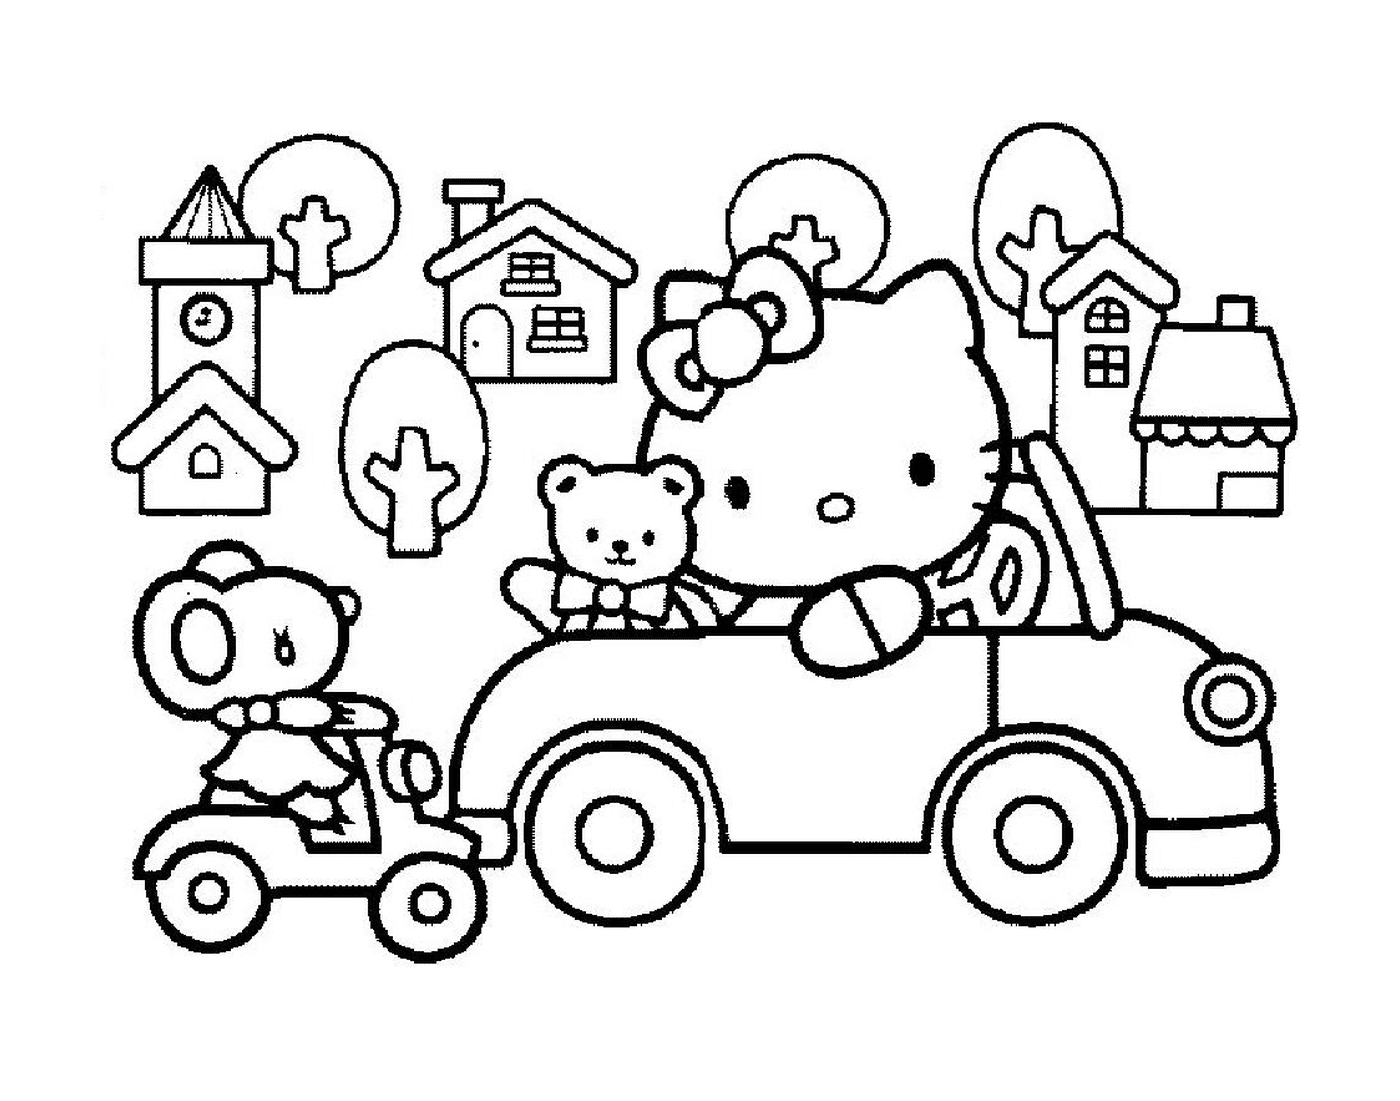  Hallo Kitty fährt ein Auto mit einem Teddybär 